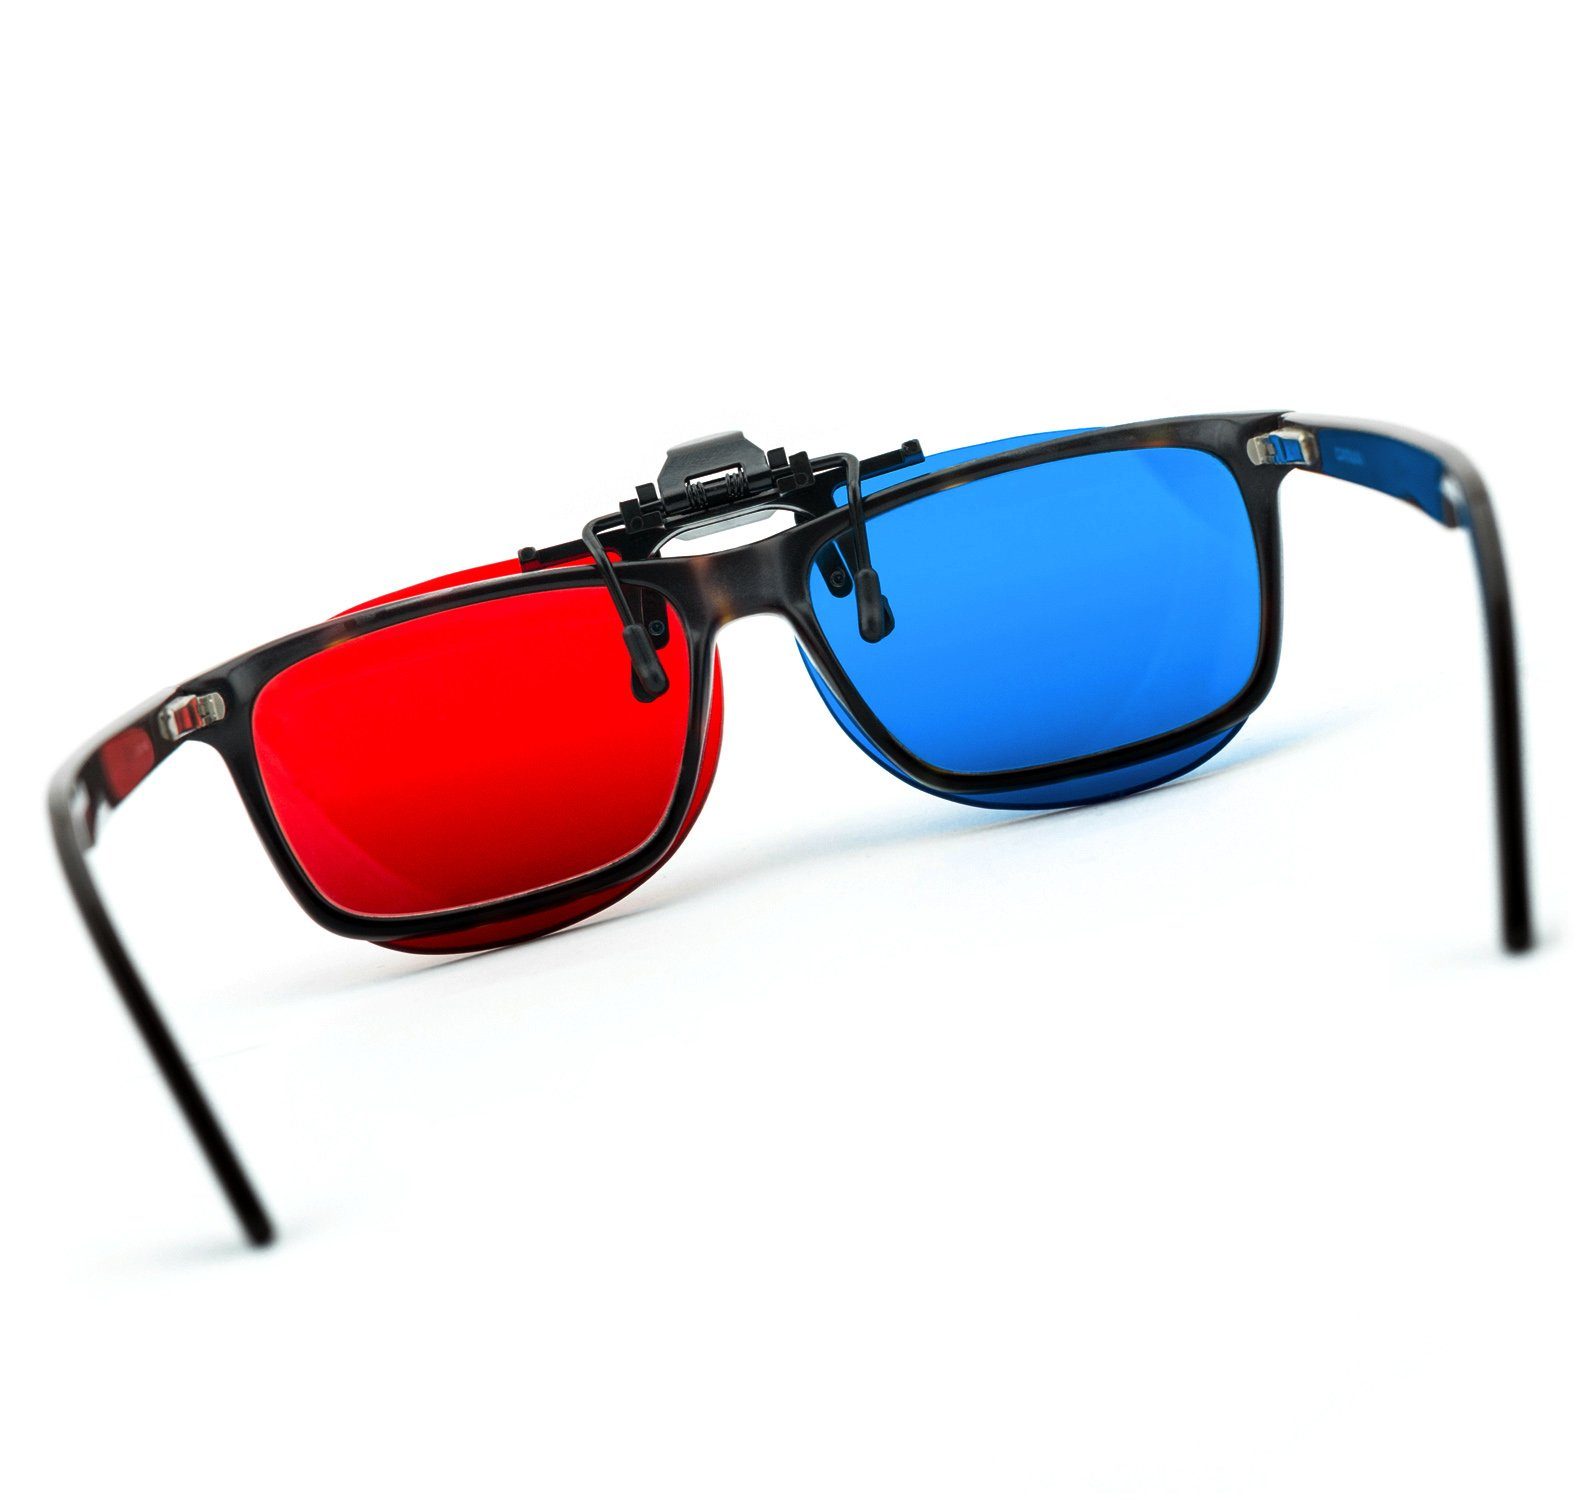 2x PRECORN (3D-Anaglyphenbrille) Clip-On Brille für 3D-Brille rot/blau 3D Brillenträger